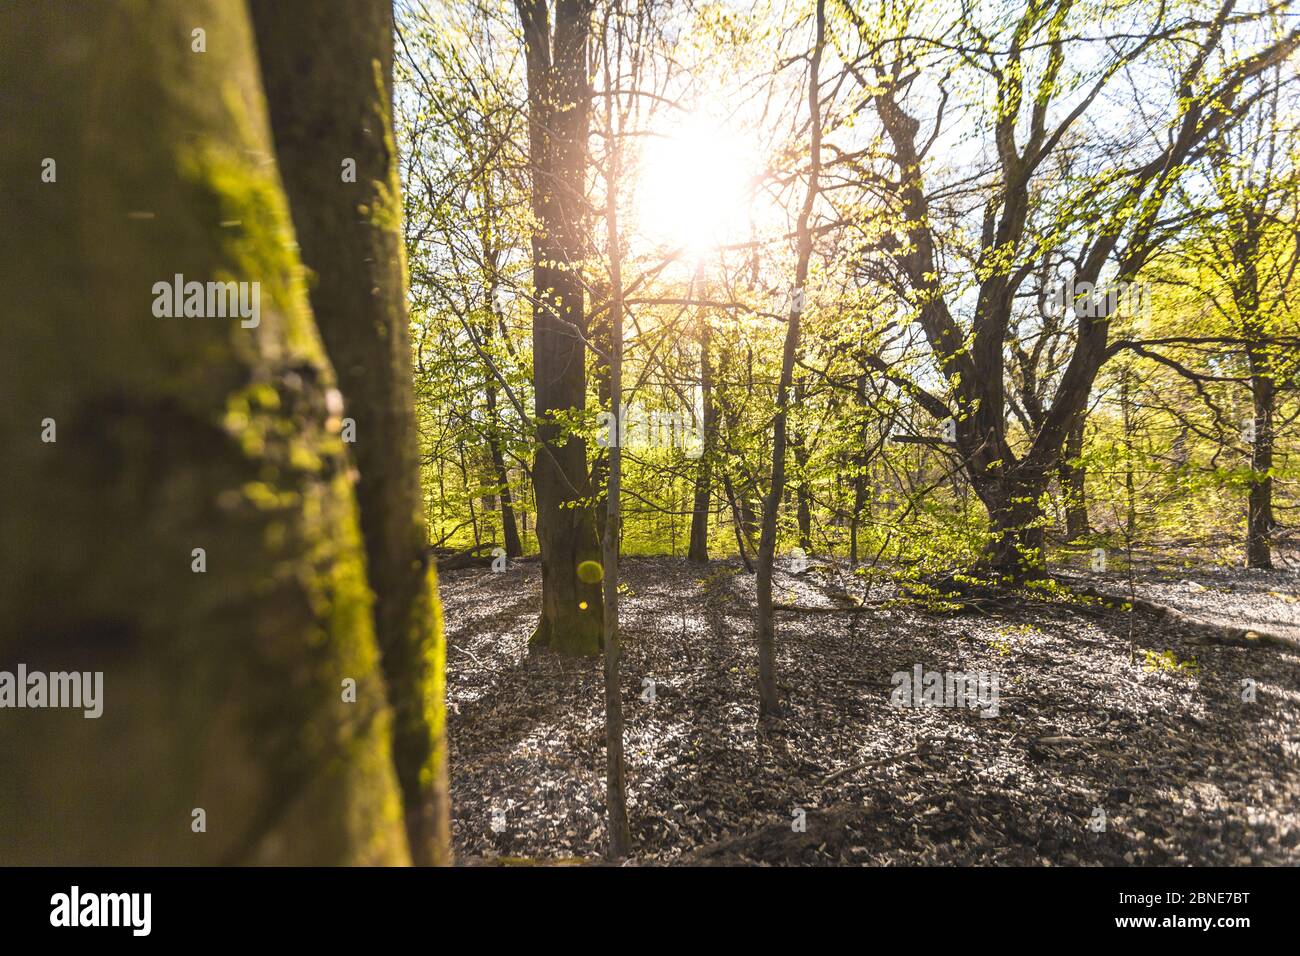 Landschaftlich schöner Wald, mit der Sonne, die ihr warmes Licht durch das Laub wirft. Reinhardswald - deutschland Stockfoto